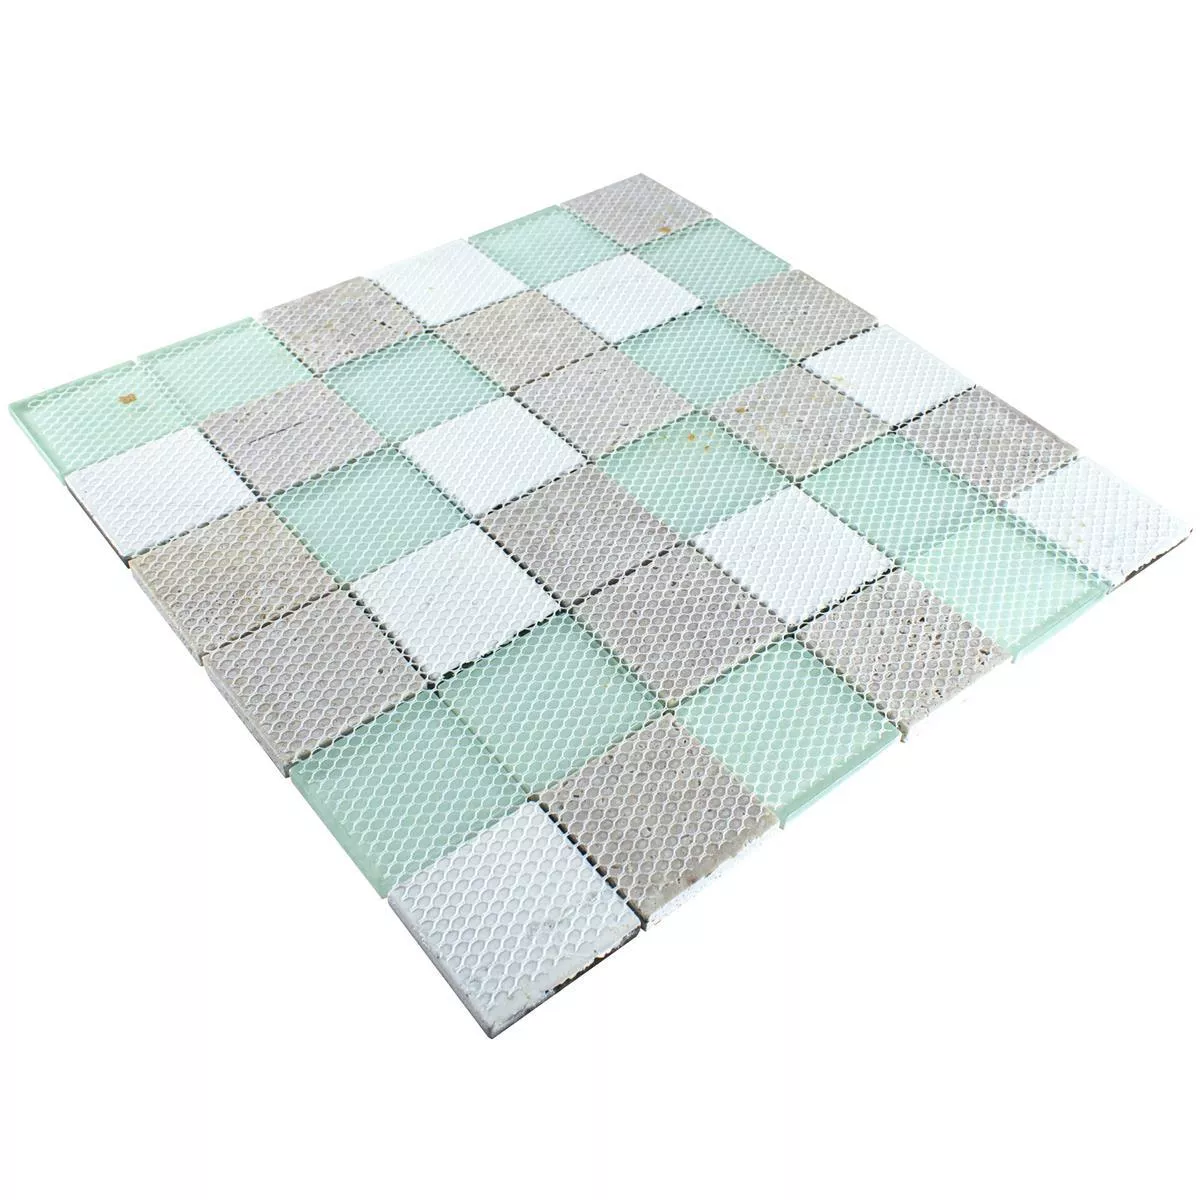 Mosaico de Cristal Azulejos Aspecto de Madera Norwalk Gris Marrón Verde Q48